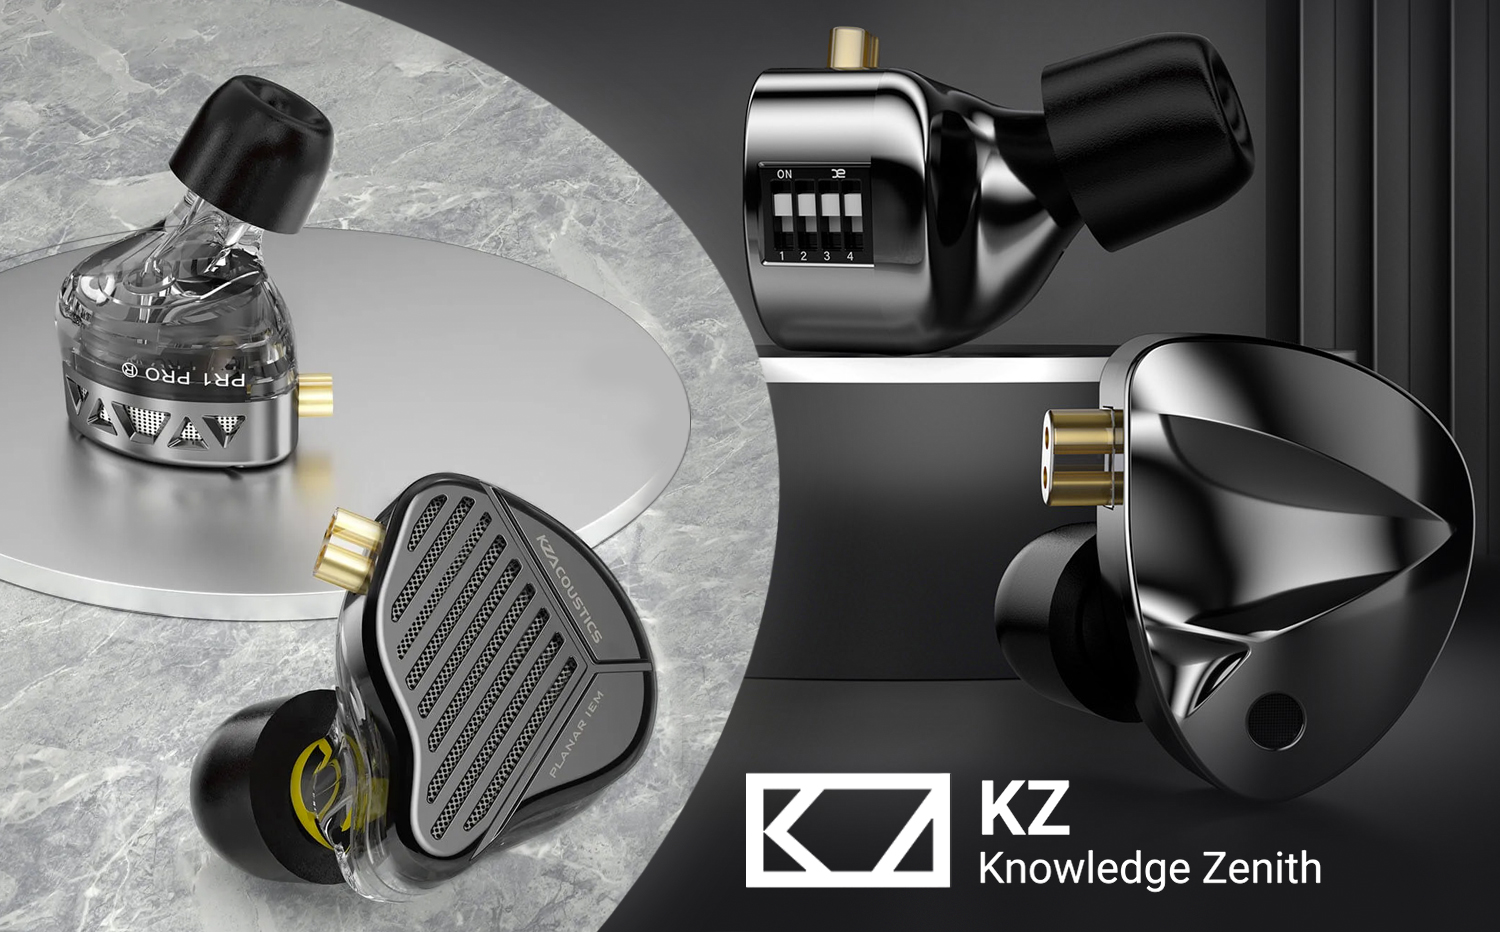 In-Ear навушники бренду KZ — вибір професіоналів та аудіофілів